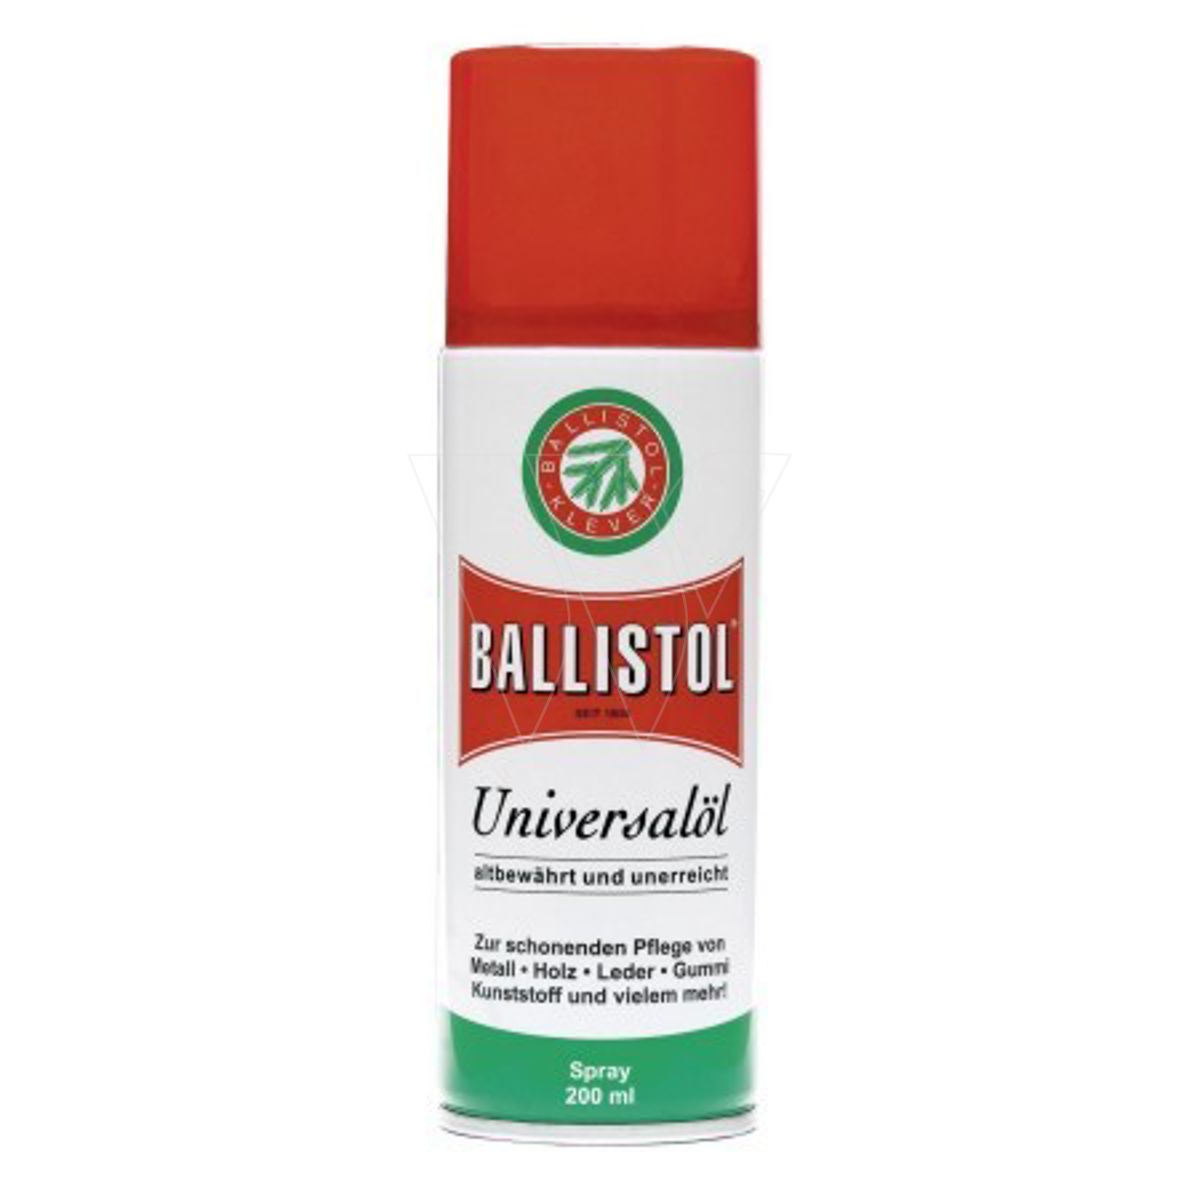 Ballistol universal-ölspray 200 ml